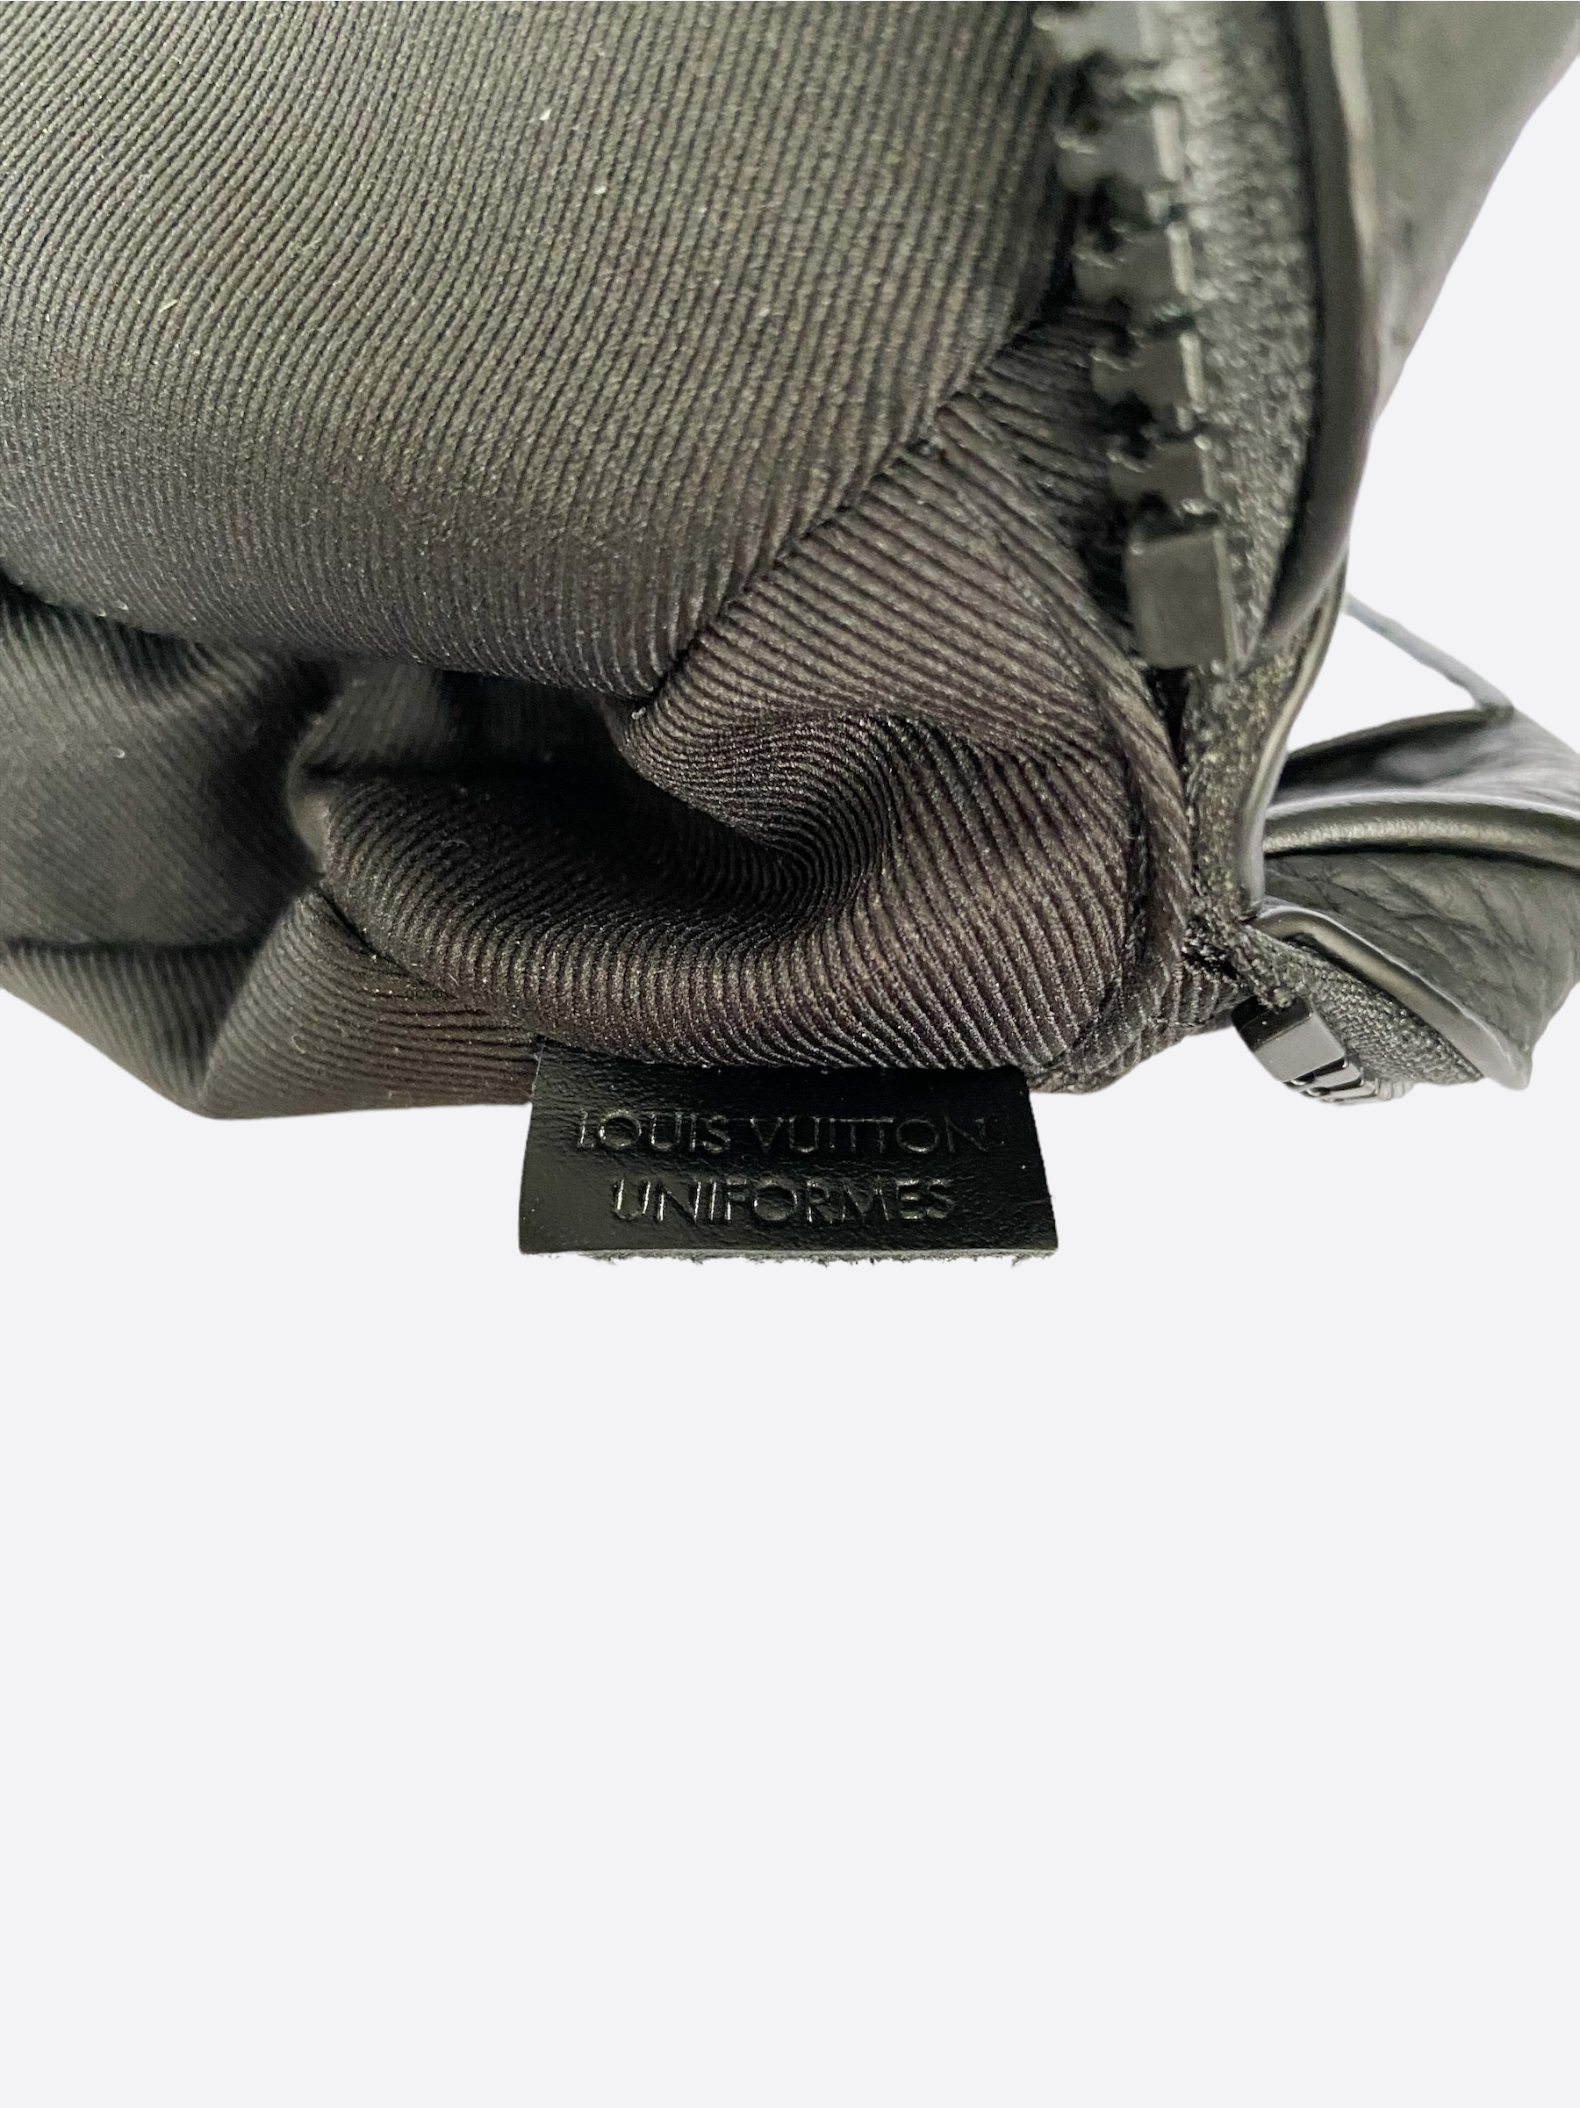 LOUIS VUITTON Monogram Uniformes Belt Bag Black 650505